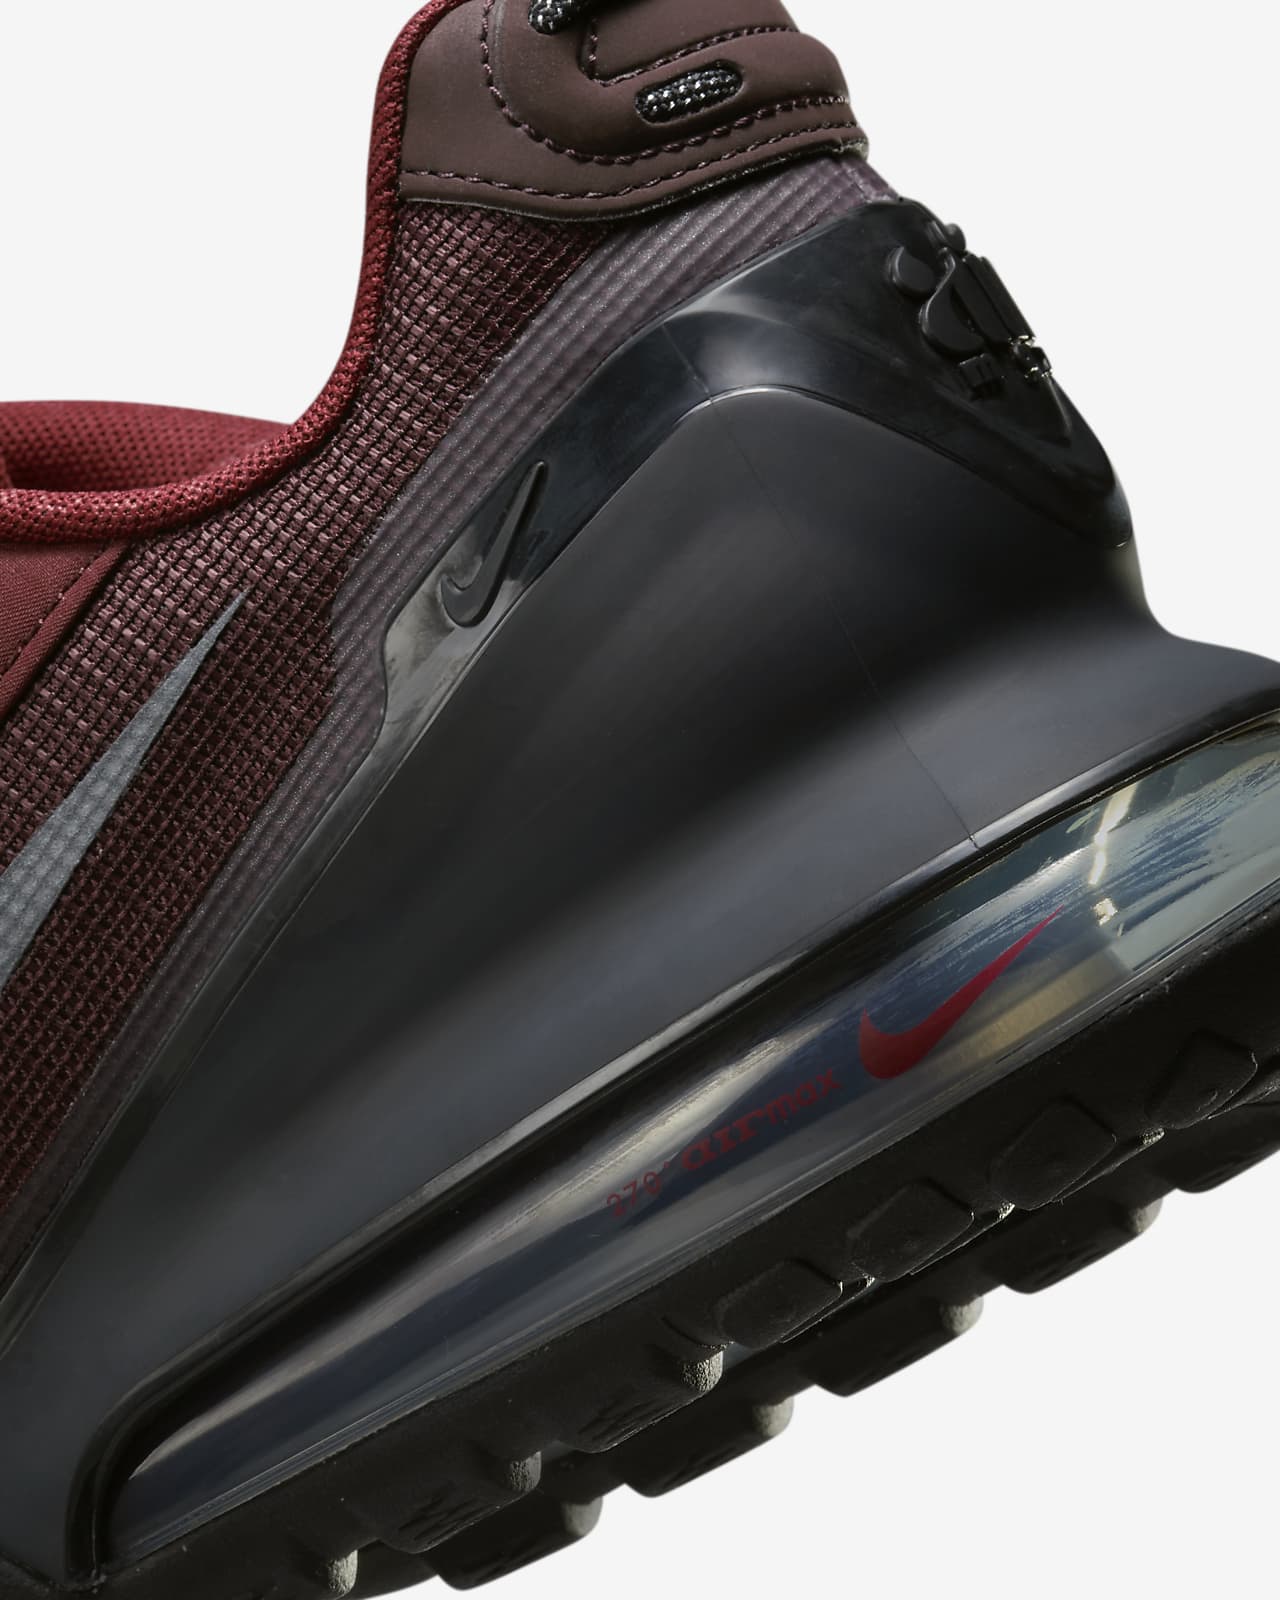 Nike Air Max Pulse Roam Mens Shoes Review